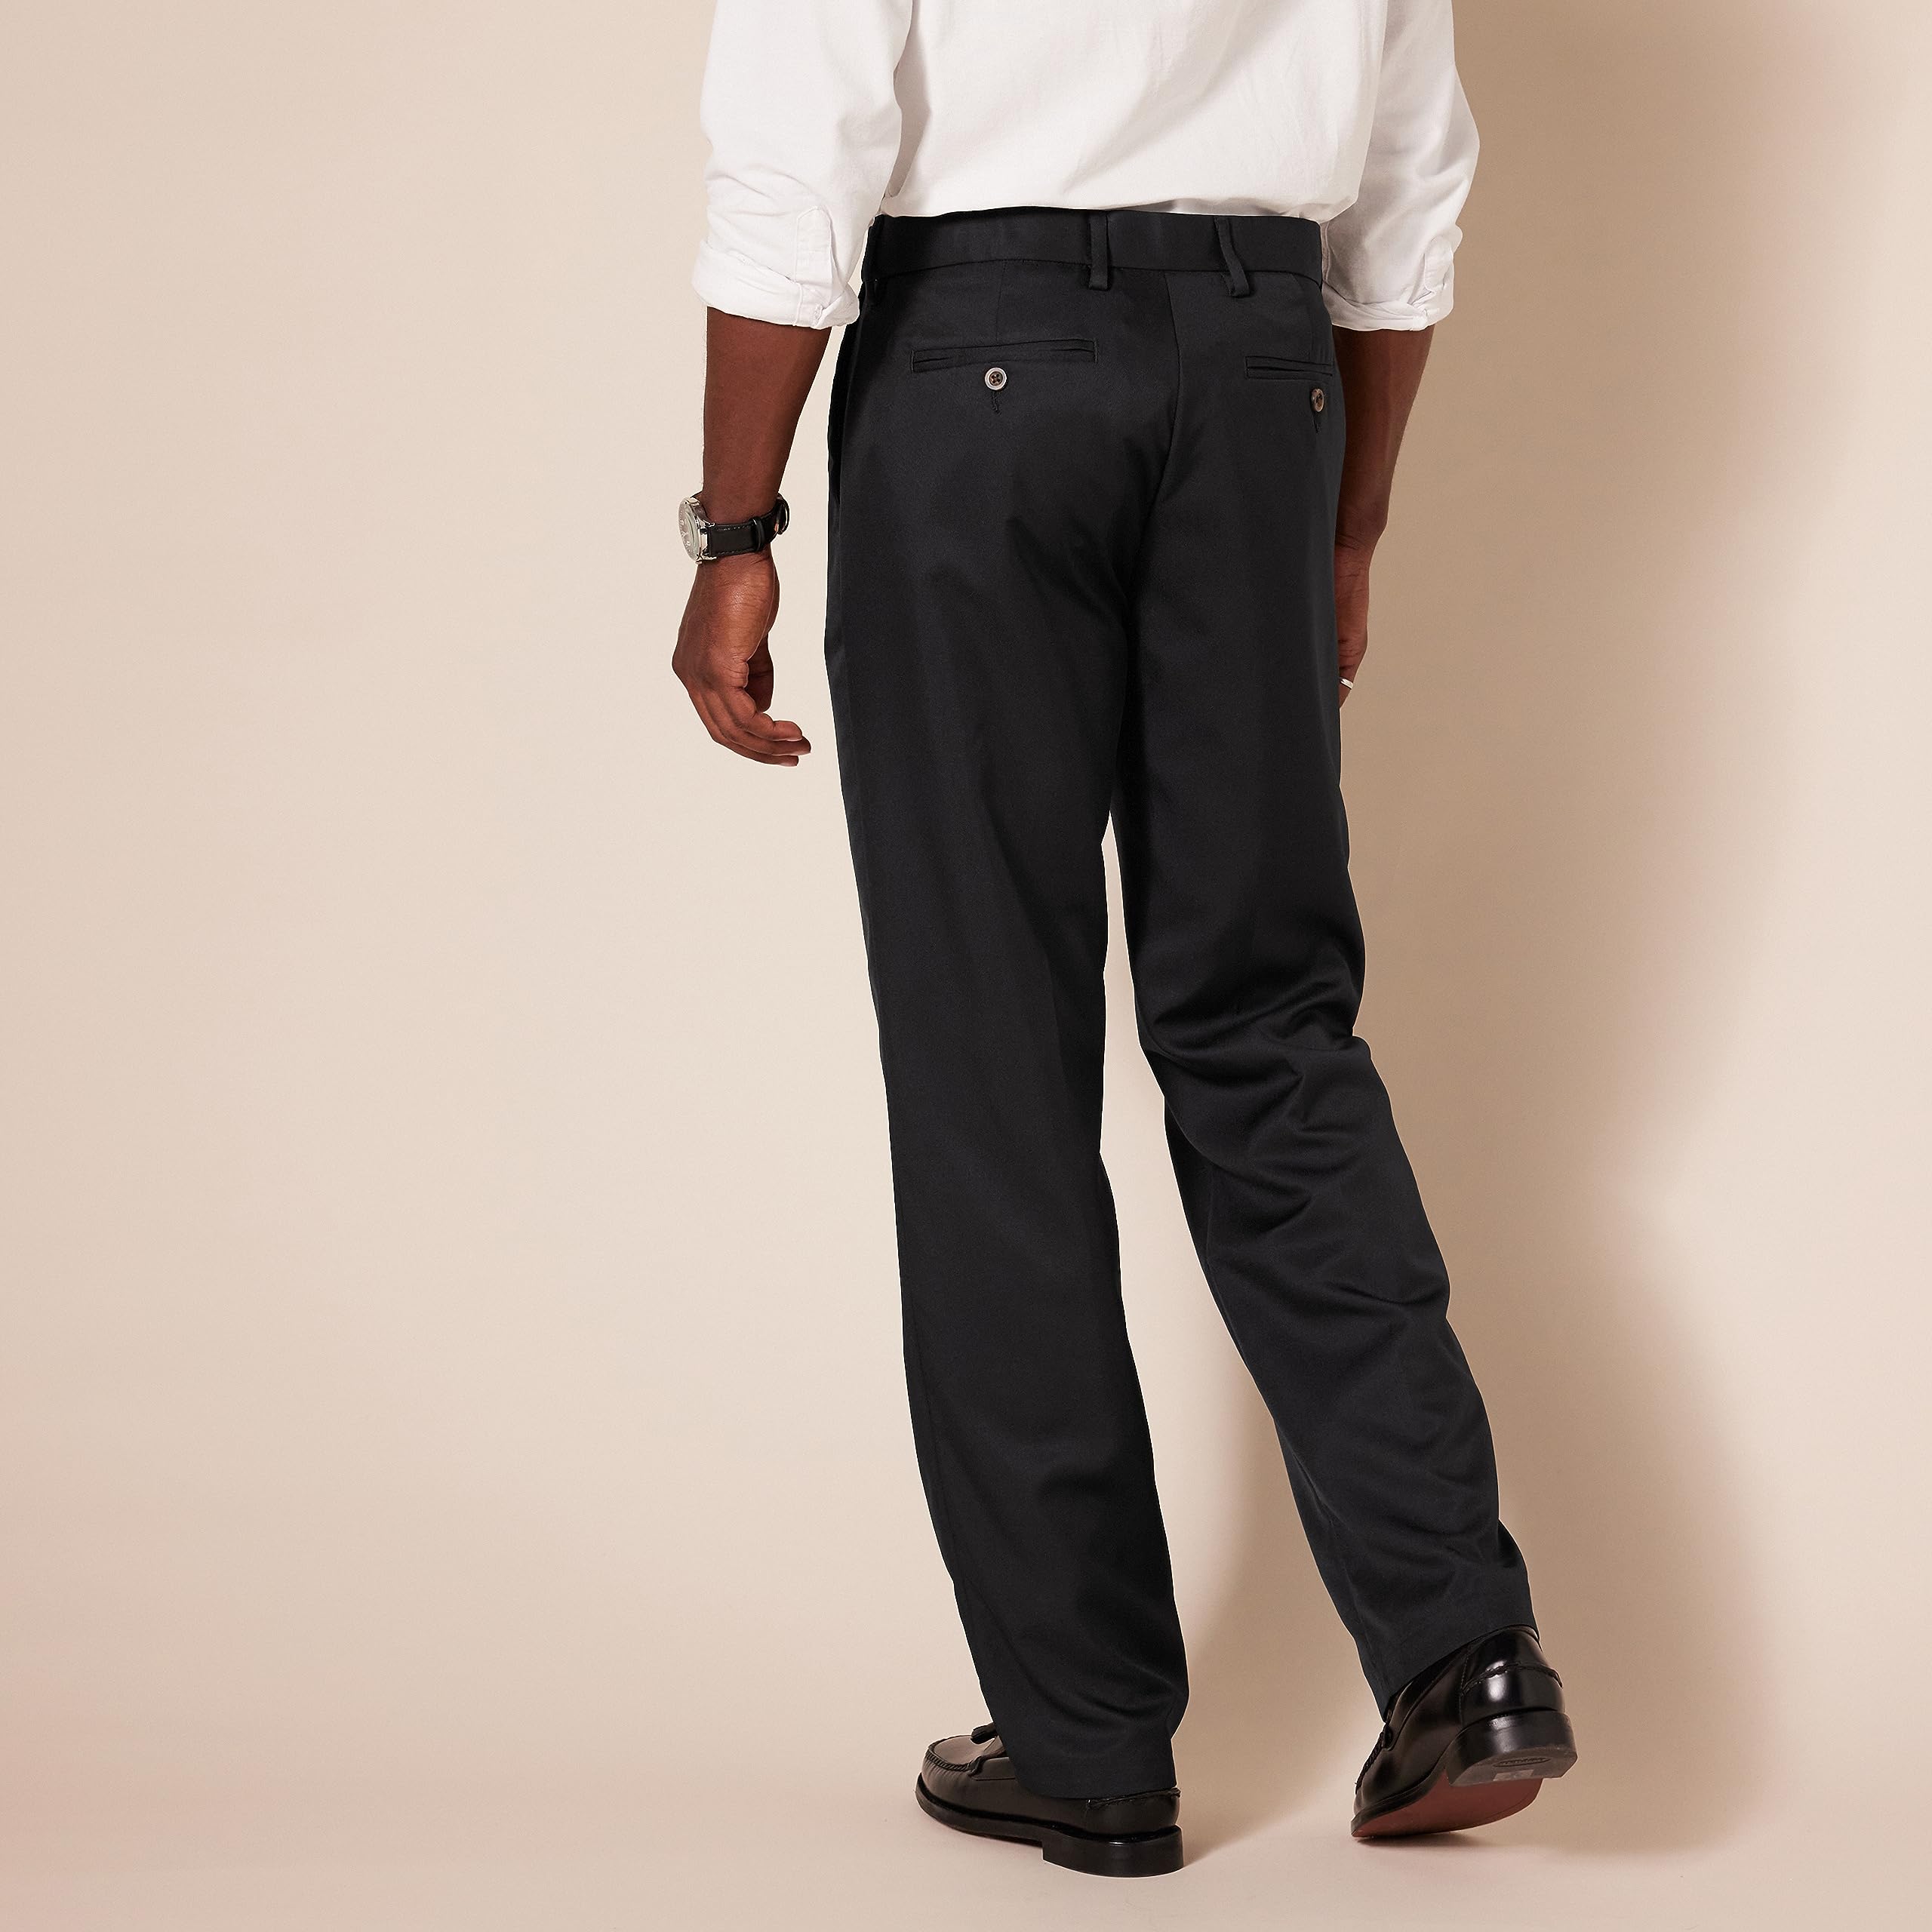 Amazon Essentials Men's Classic-Fit Expandable-Waist Flat-Front Dress Pant